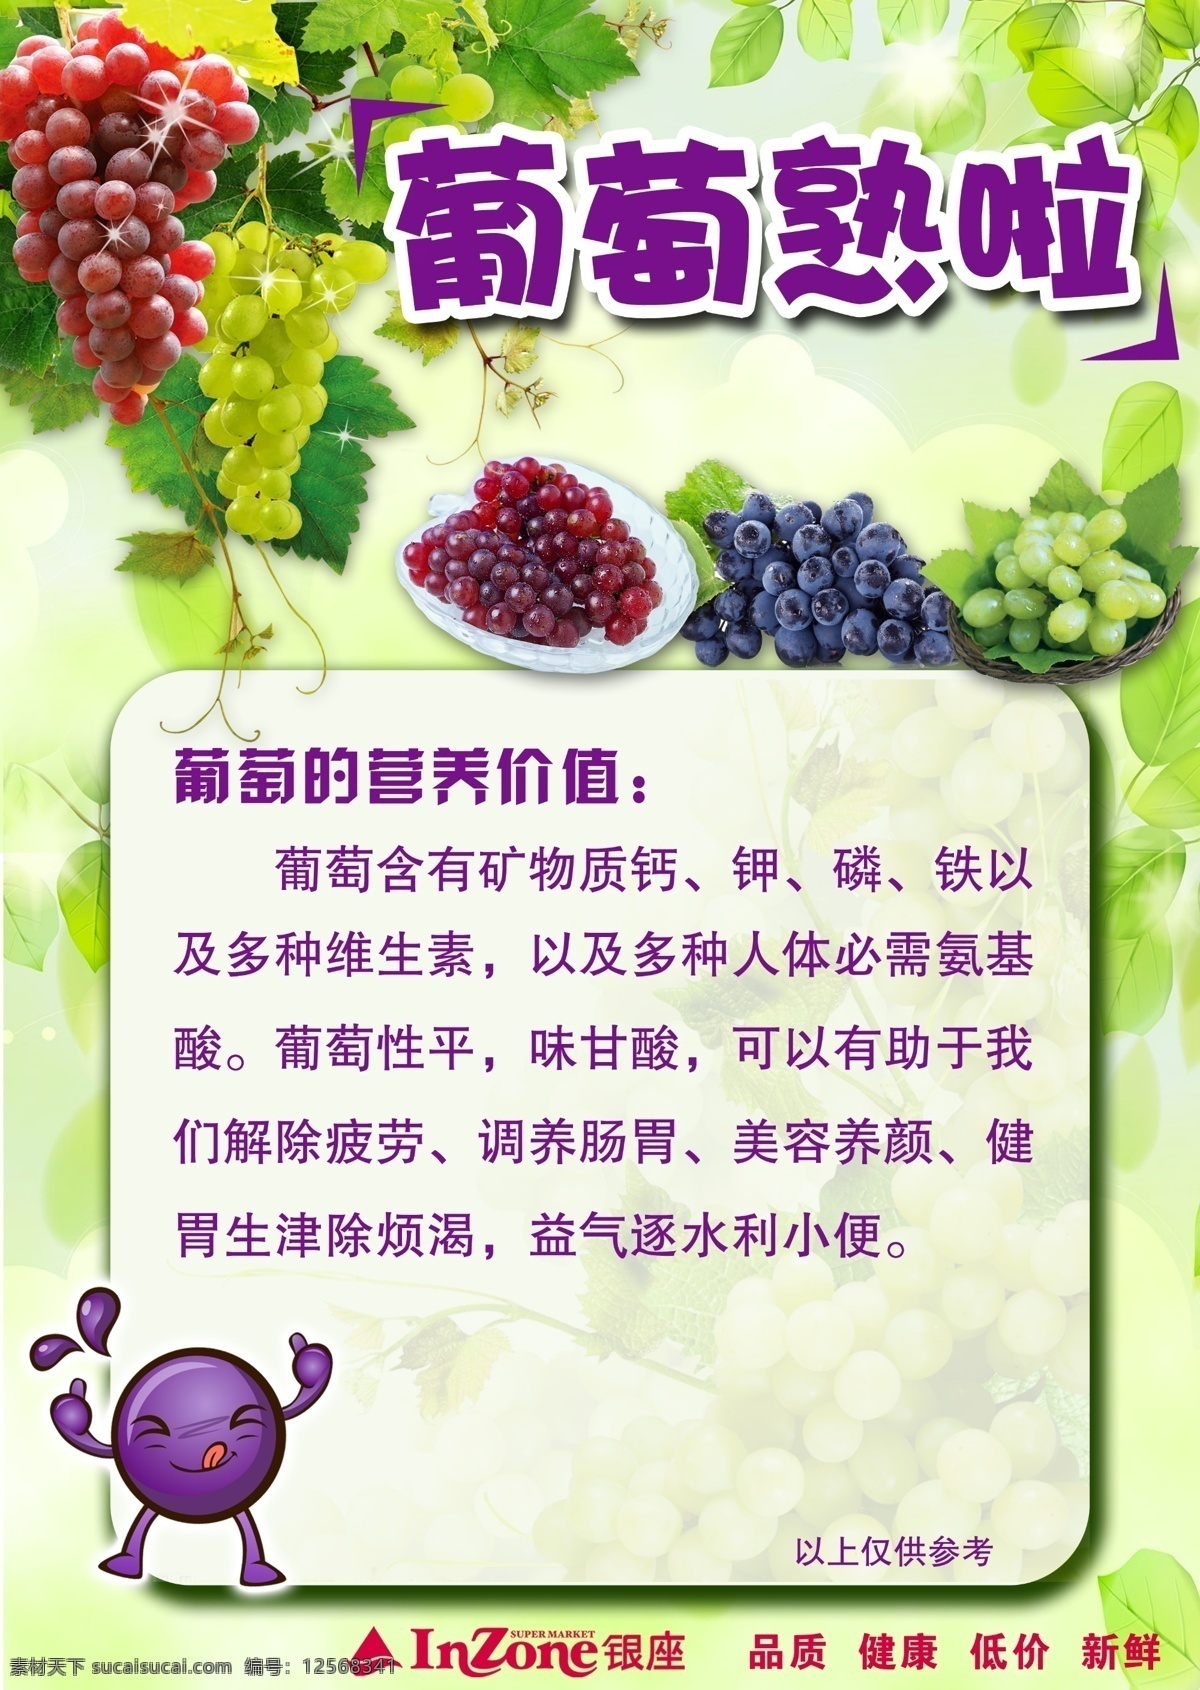 葡萄 营养 价值 夏季 熟 活动 海报 专题 诱人葡萄 绿色葡萄 紫色葡萄 提子 新鲜葡萄 卡通葡萄小人 广告设计模板 源文件